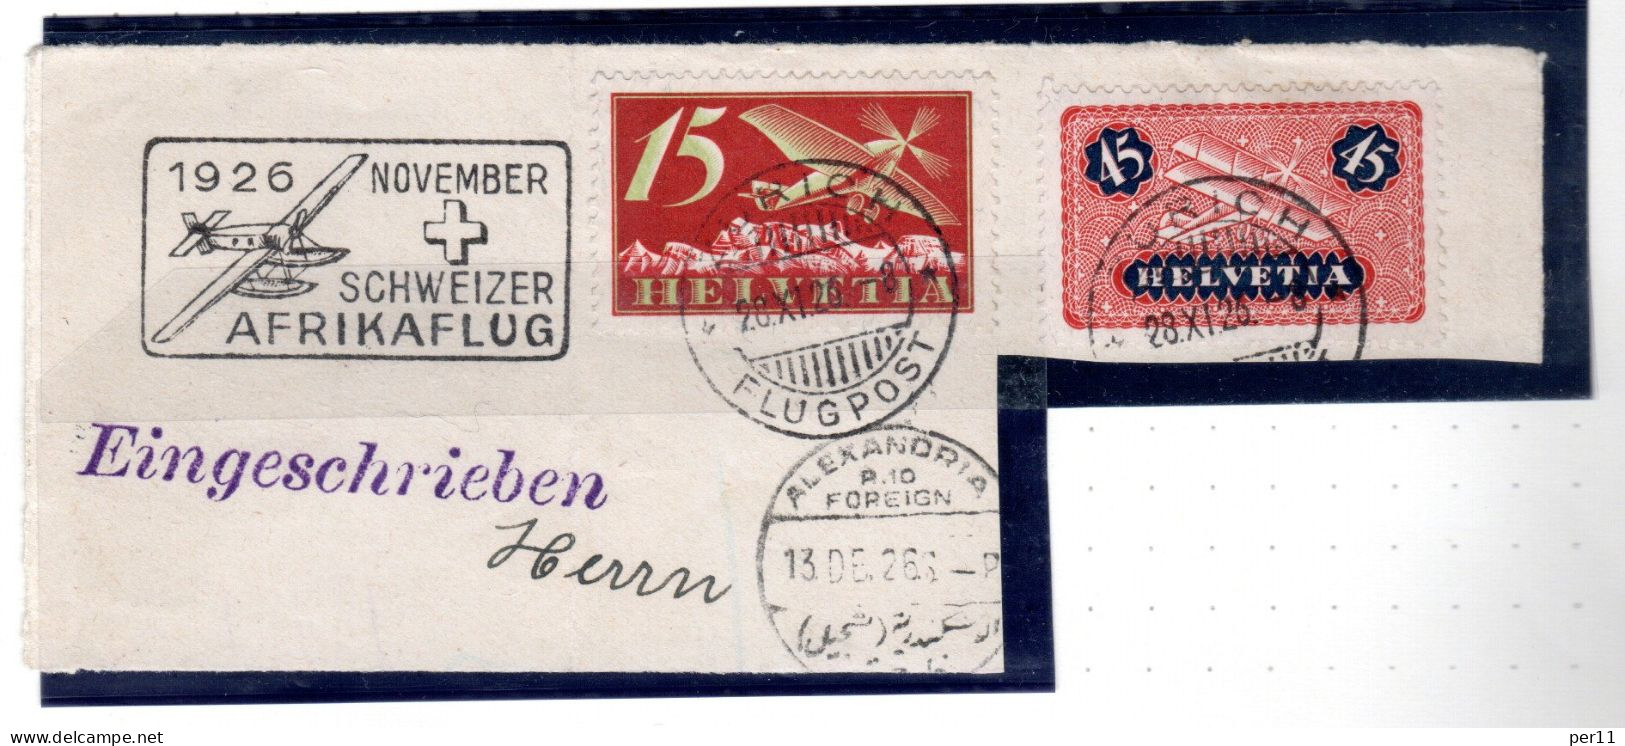 1926 November Afrikaflug , Part Of Registered Letter  (ch395) - Oblitérés